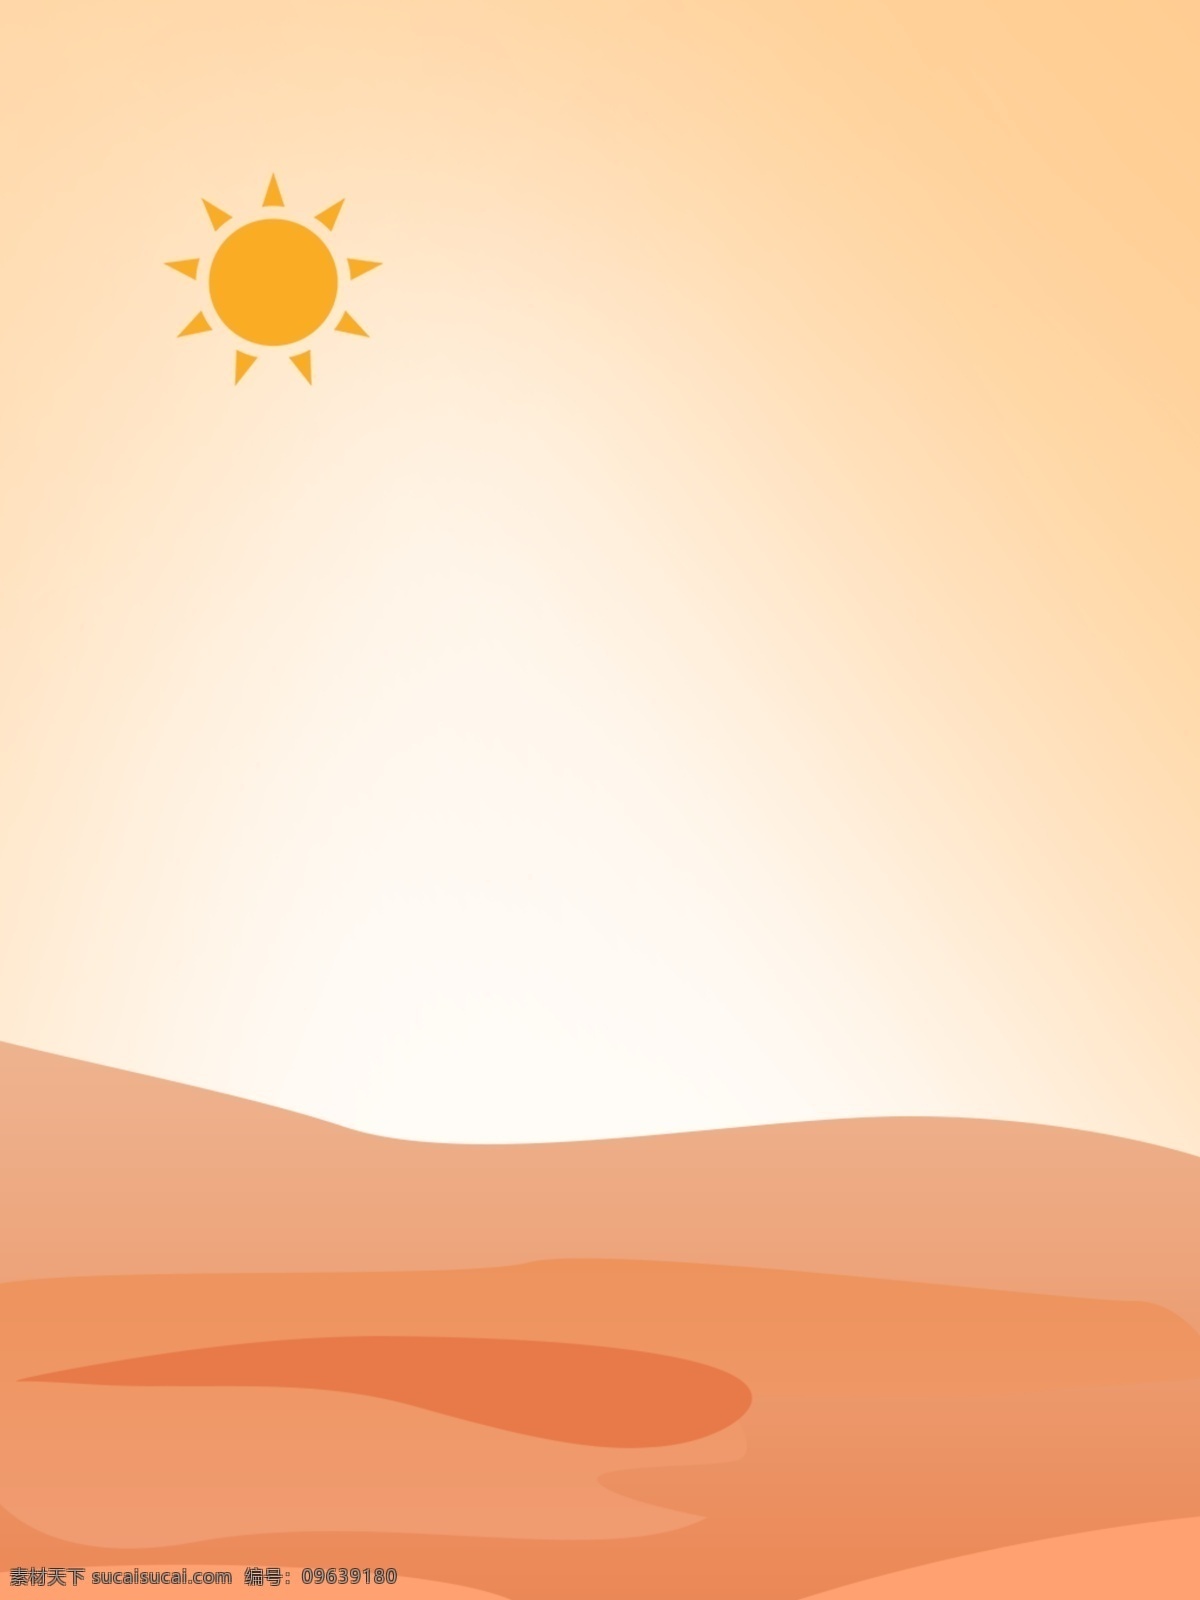 简约 清新 橙色 太阳 晚霞 扁平 背景 黄色 简单 沙漠